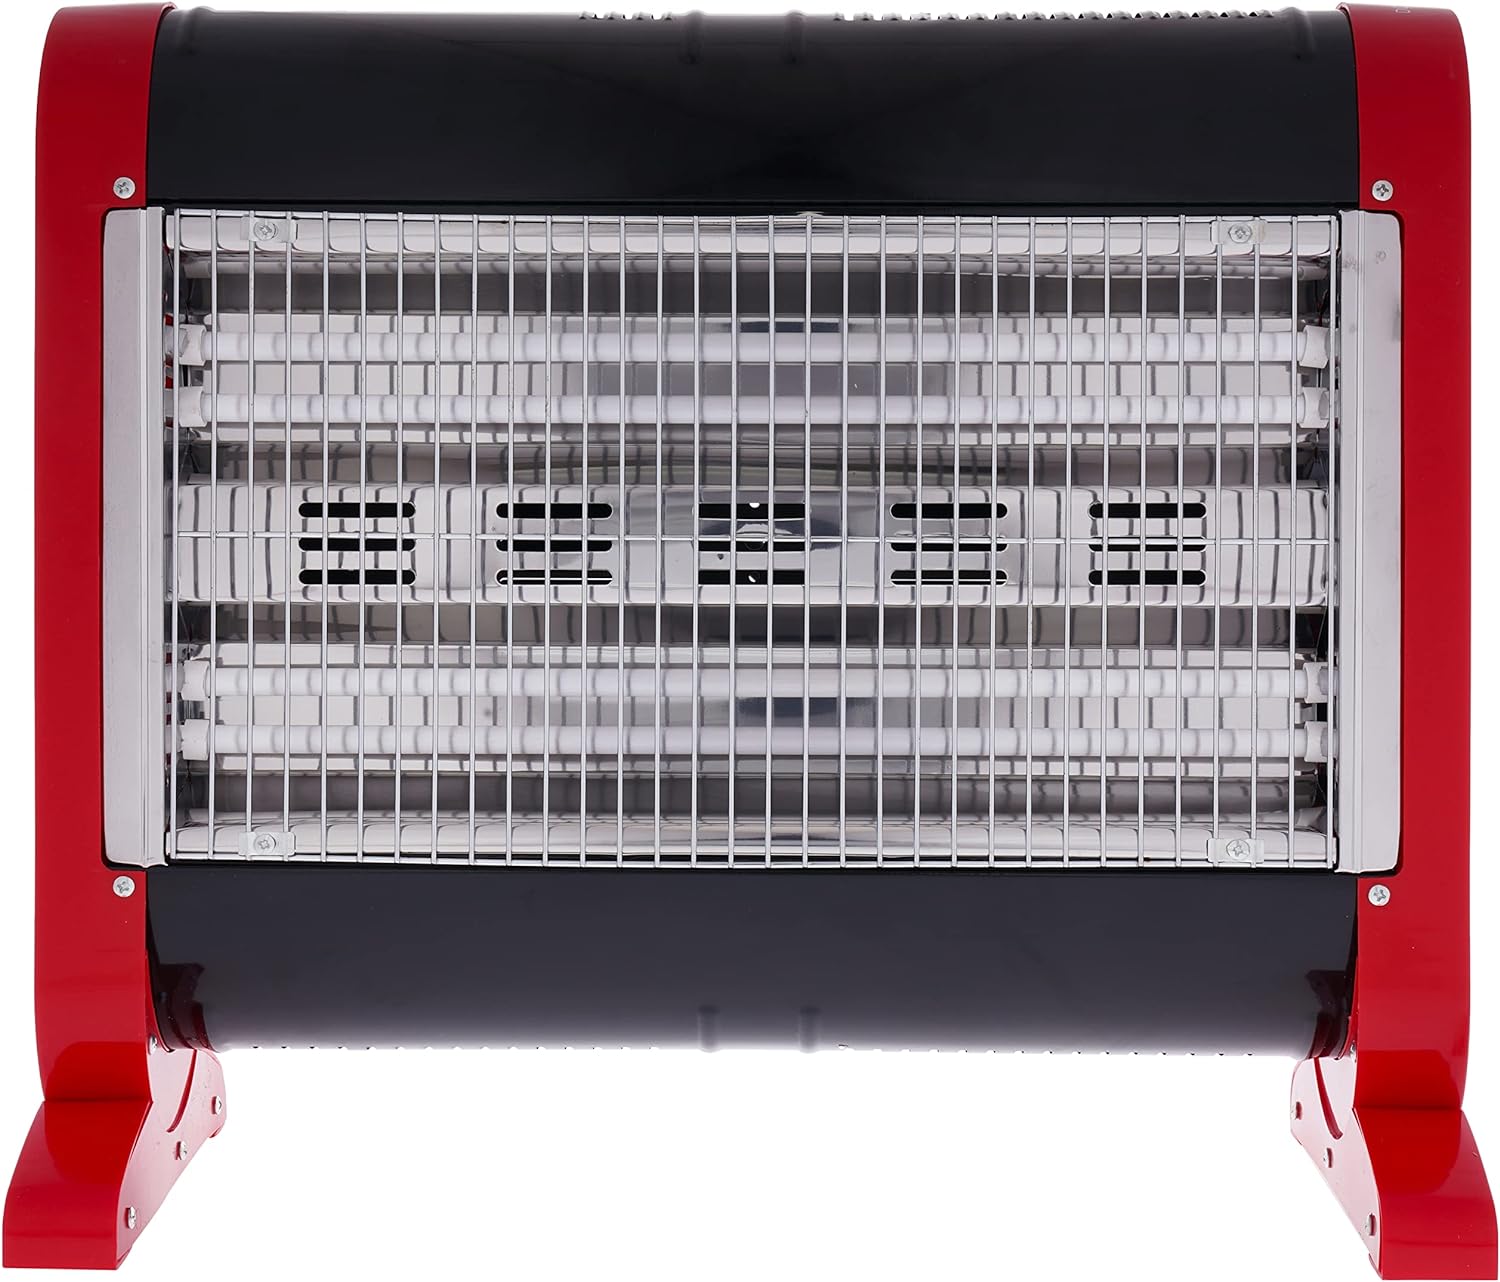 Nikai Electric Fan Heater, 2000W, White - Nfh6006 |Two Years Warranty